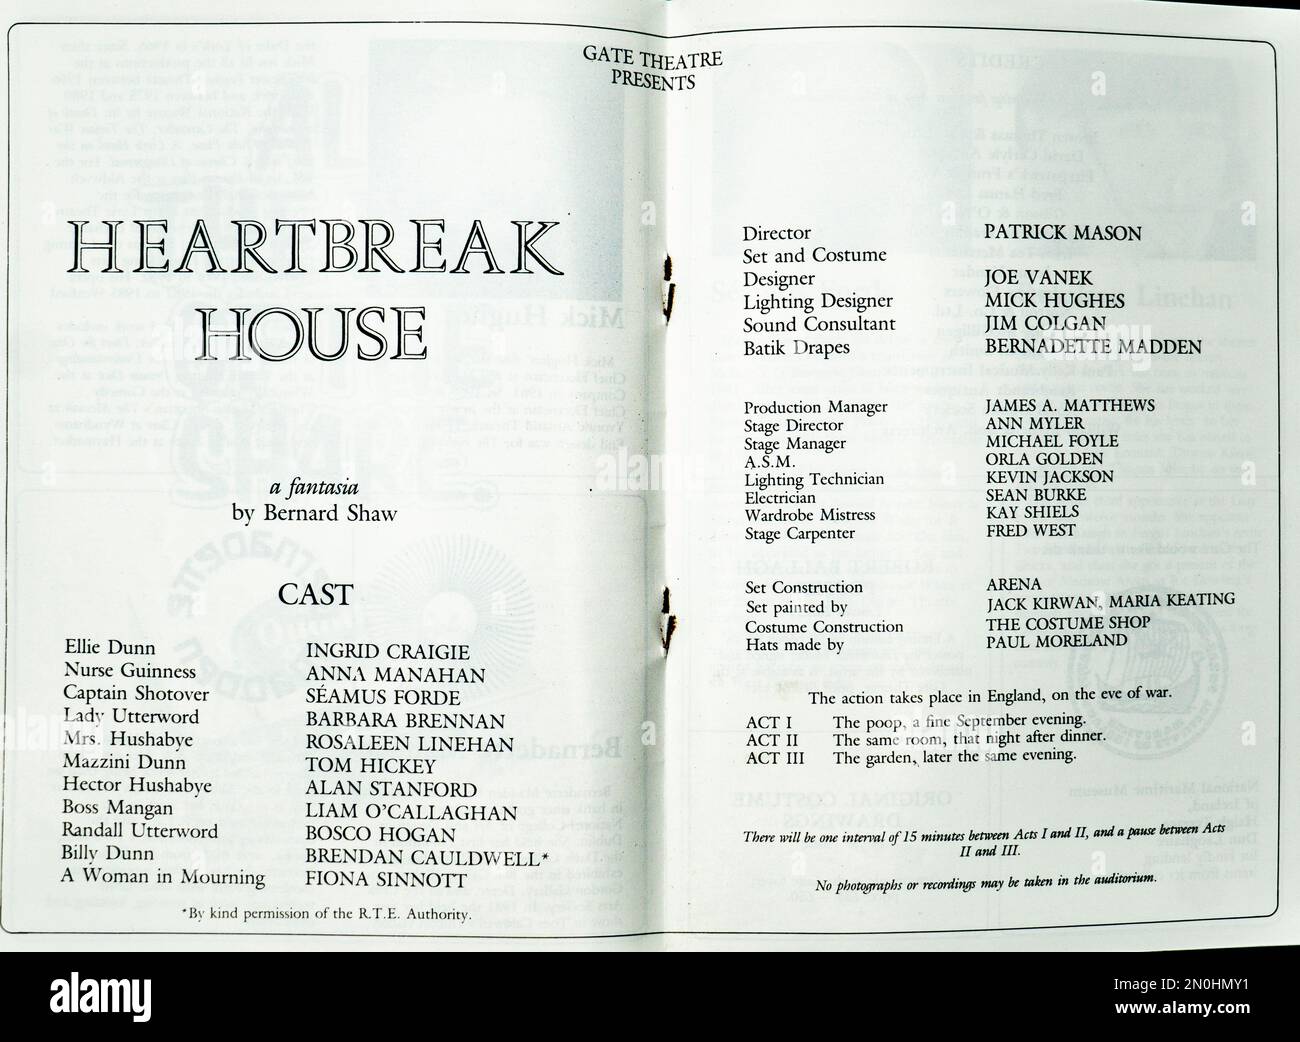 La cast list per la produzione 1986 di George Bernard Shaw Heartbreak House nel Gate Theatre, Dublino, Irlanda. Direttore Patrick Mason. Foto Stock